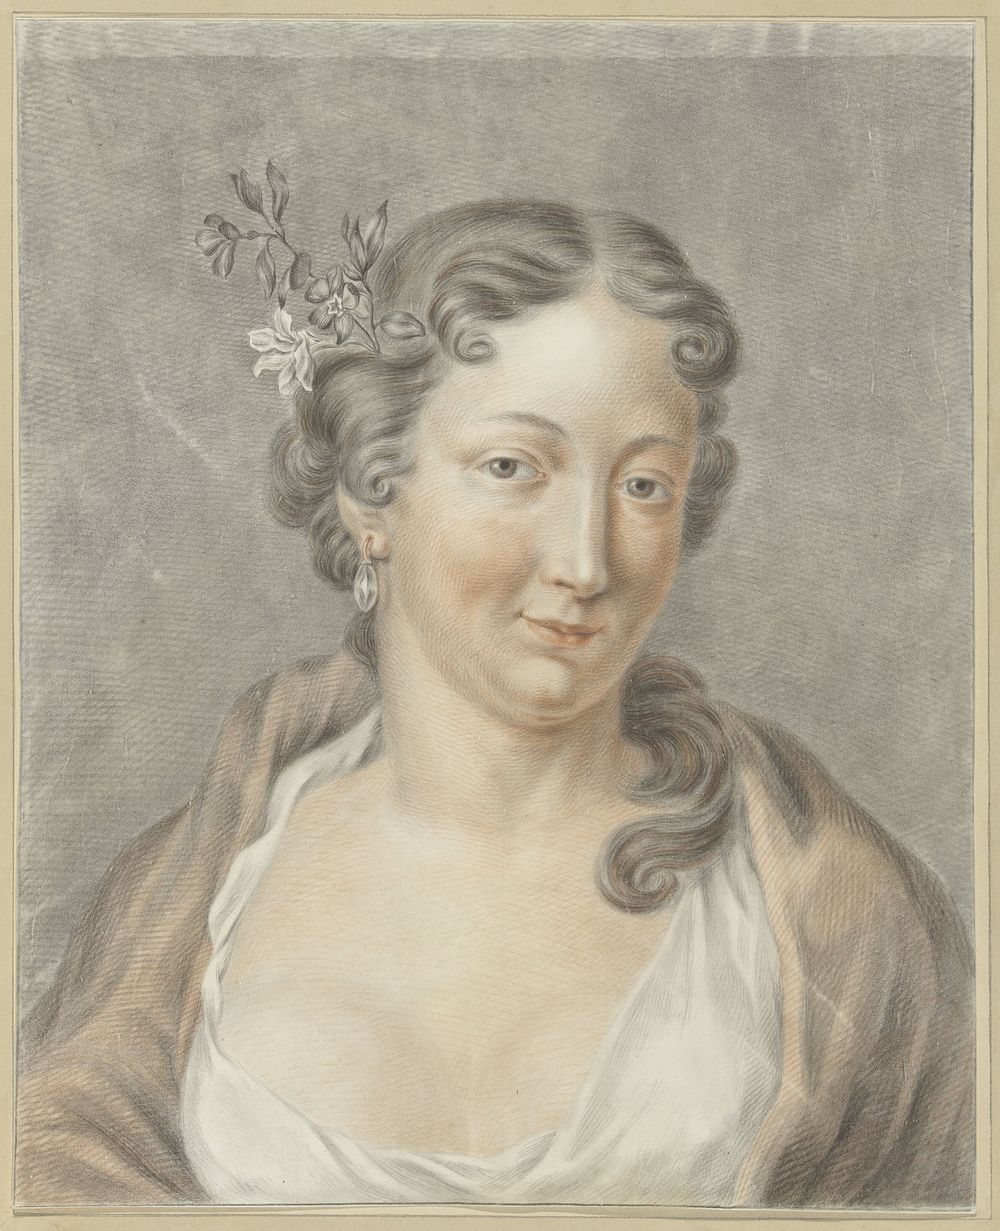 Jonge vrouw (1741 - 1820) by Abraham Delfos and Jan Wandelaar